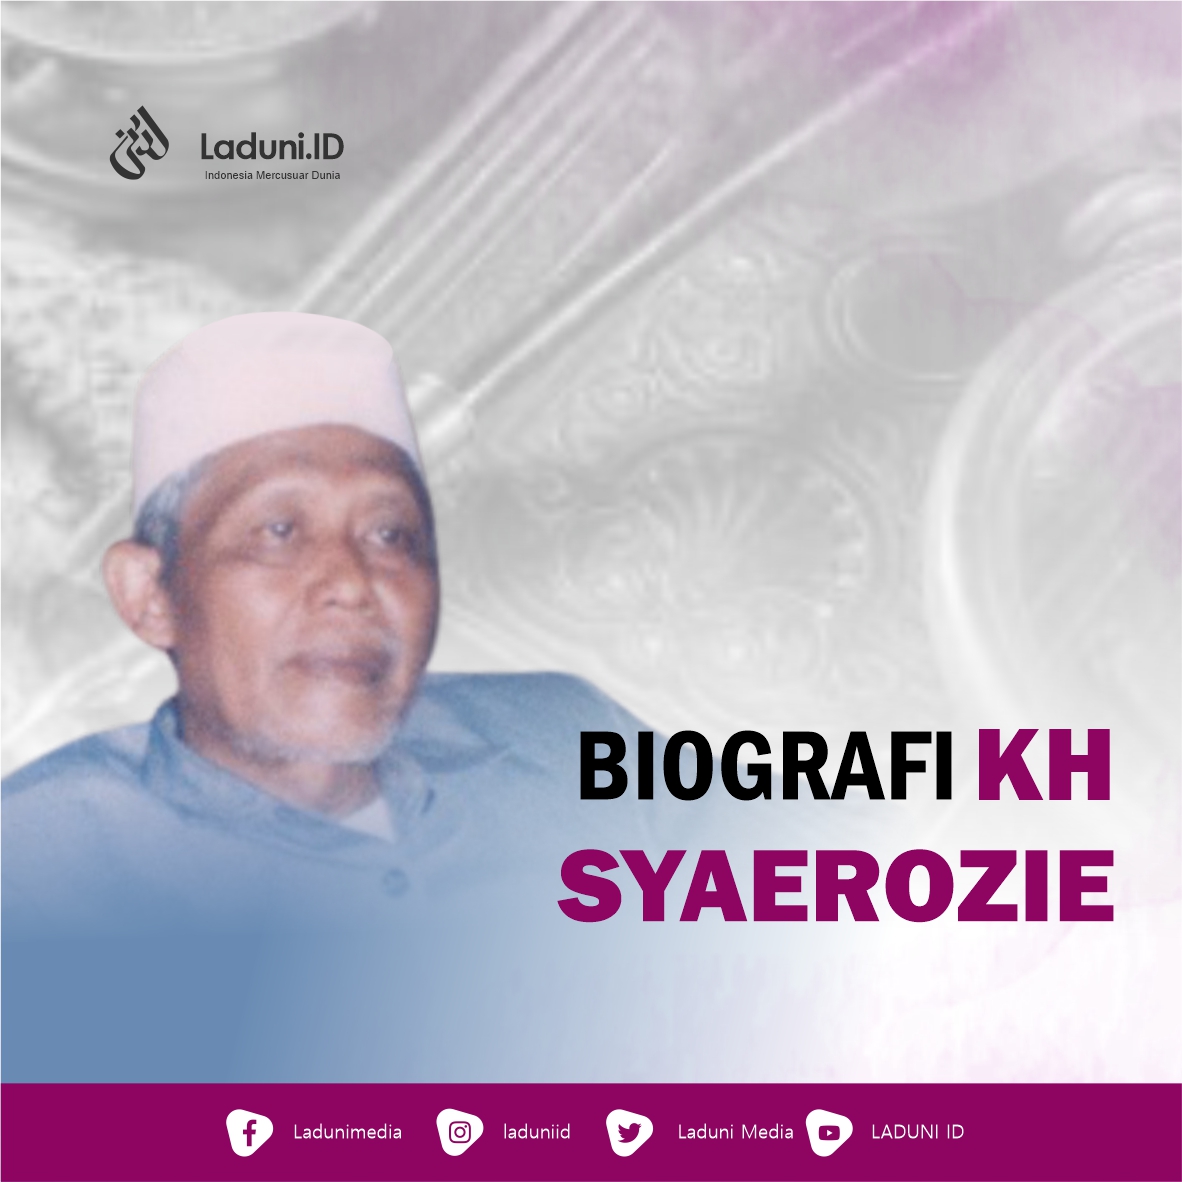 Biografi KH. Syaerozie Abdurrohim